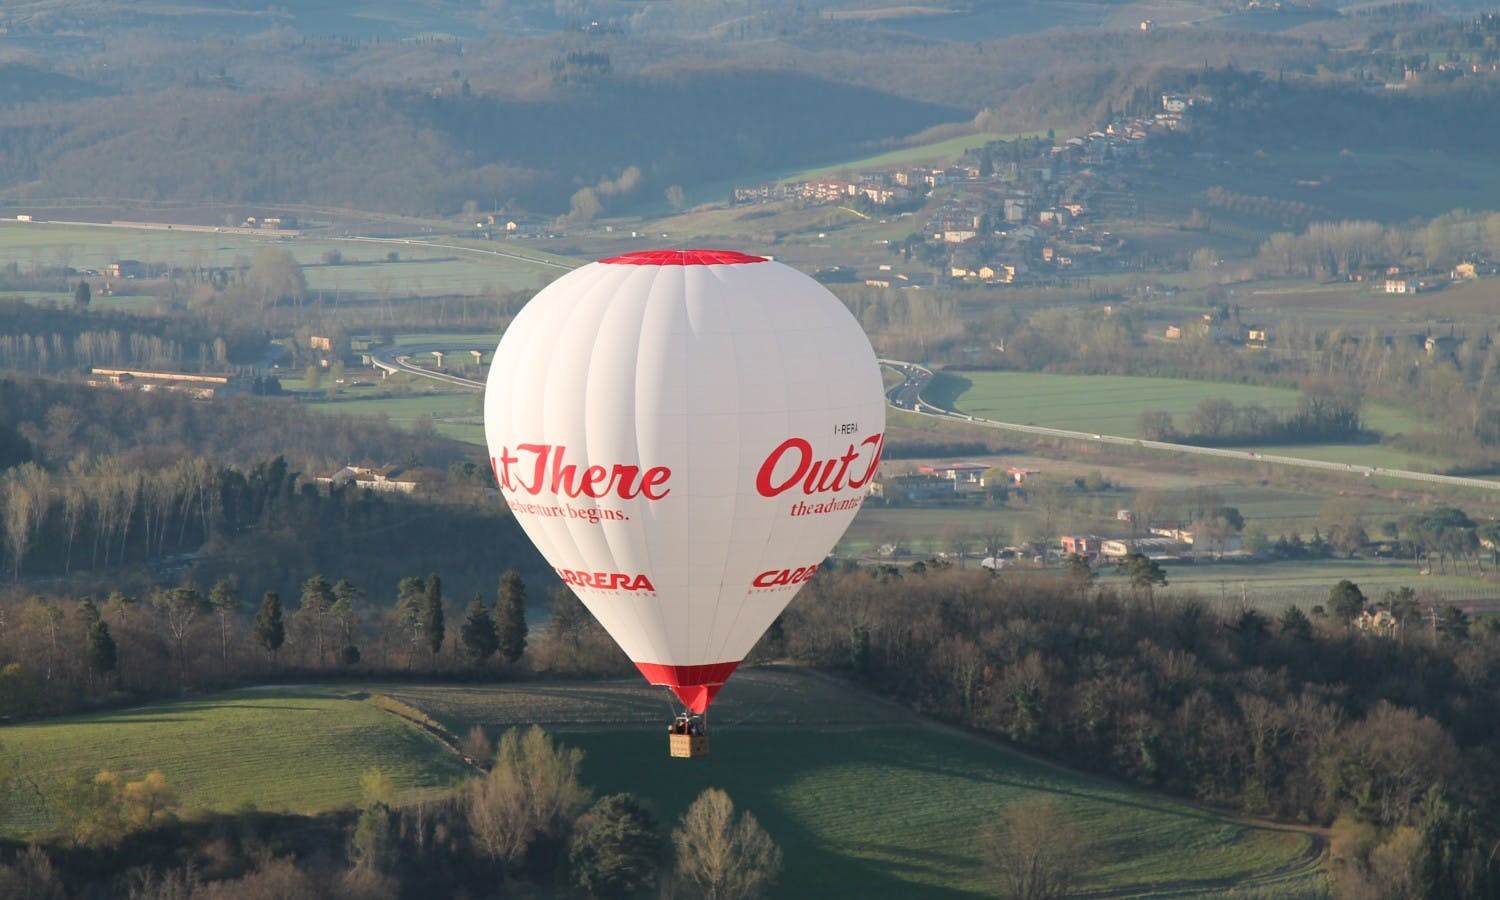 Lot balonem na ogrzane powietrze nad Sieną w Toskanii